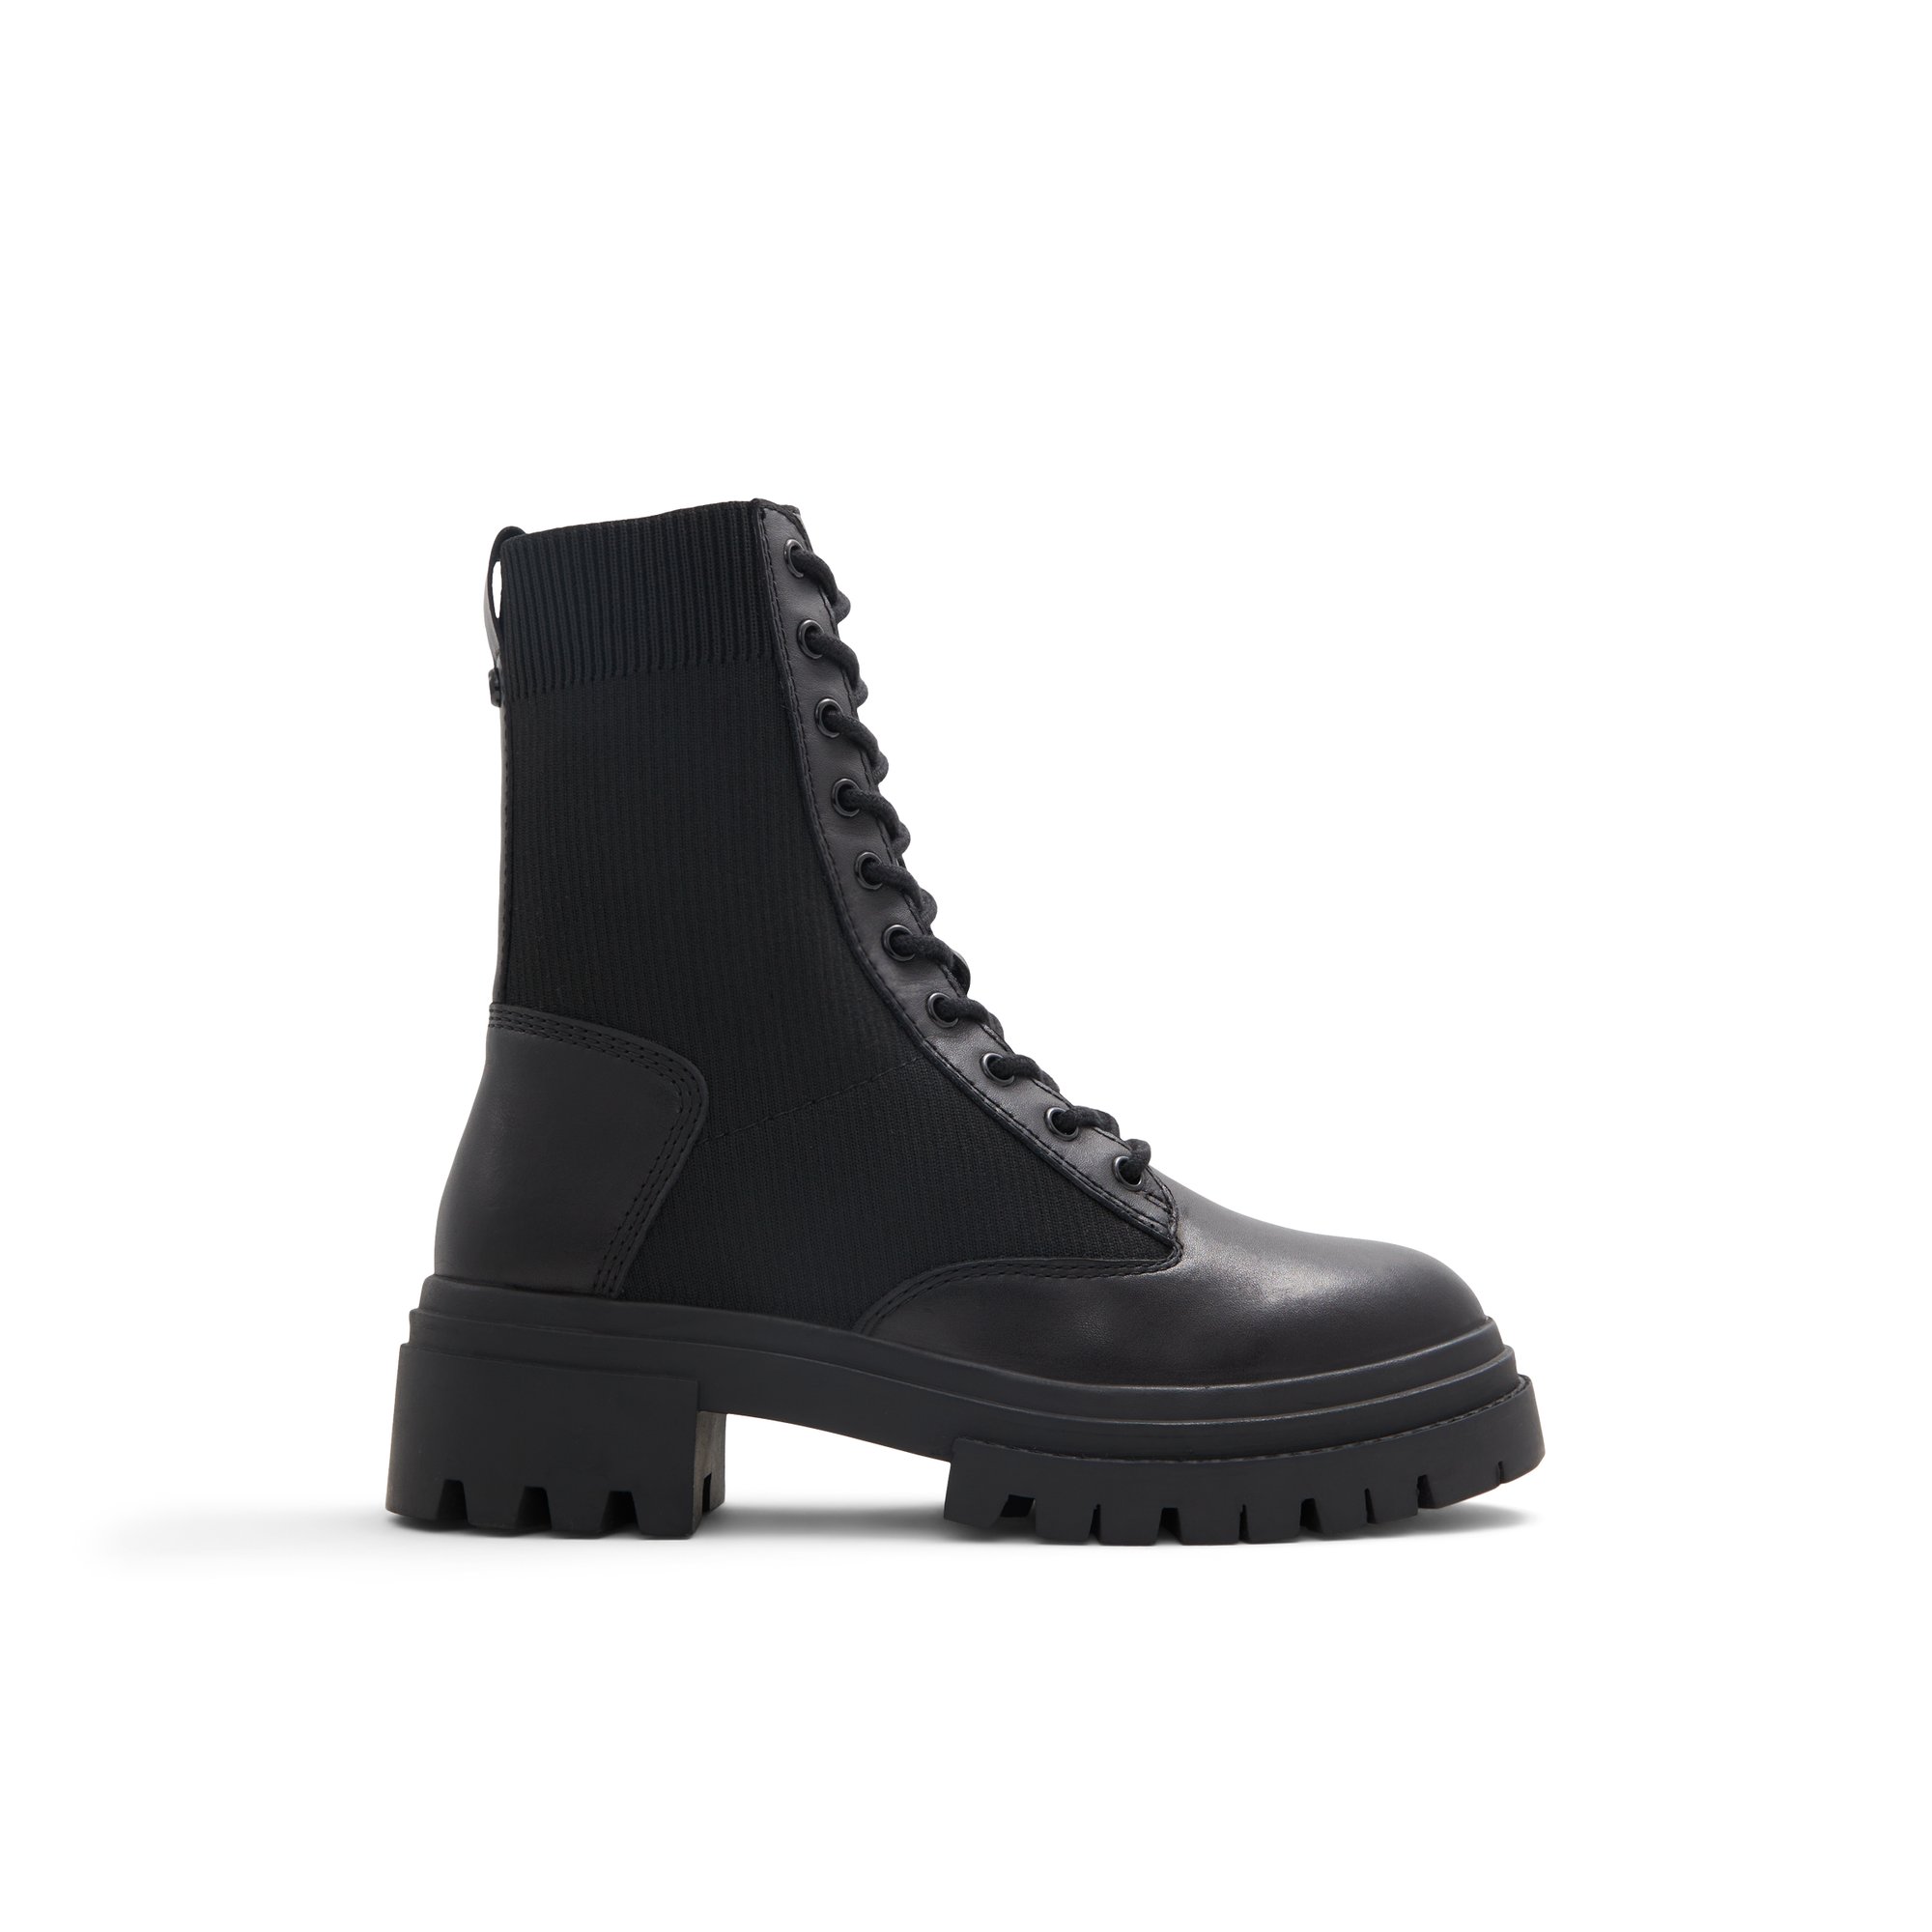 ALDO Reflow - Women's Combat Boot - Black